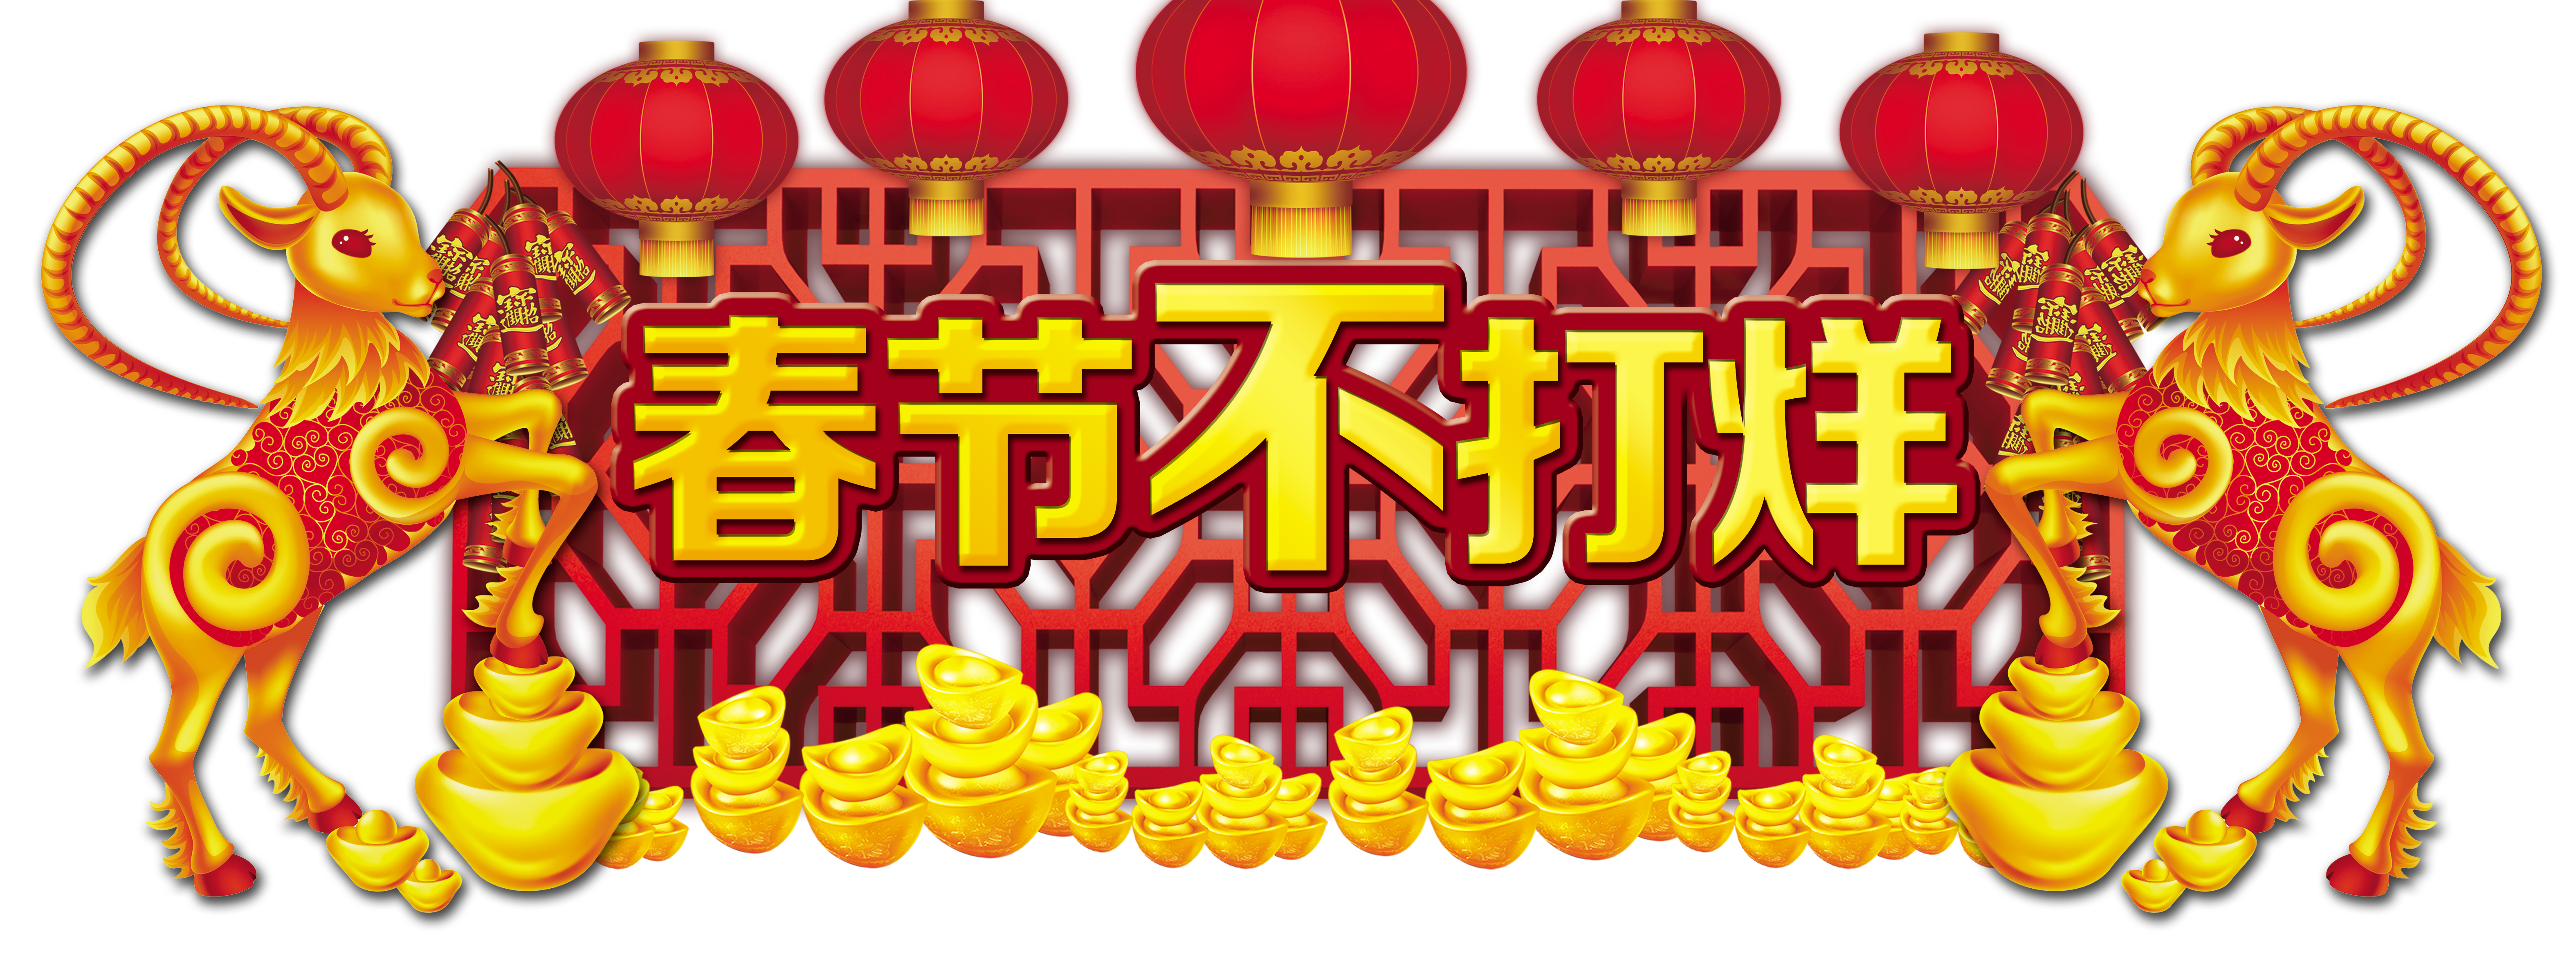 Le Nouvel An chinois et la Fête du Printemps ne sont pas fermés